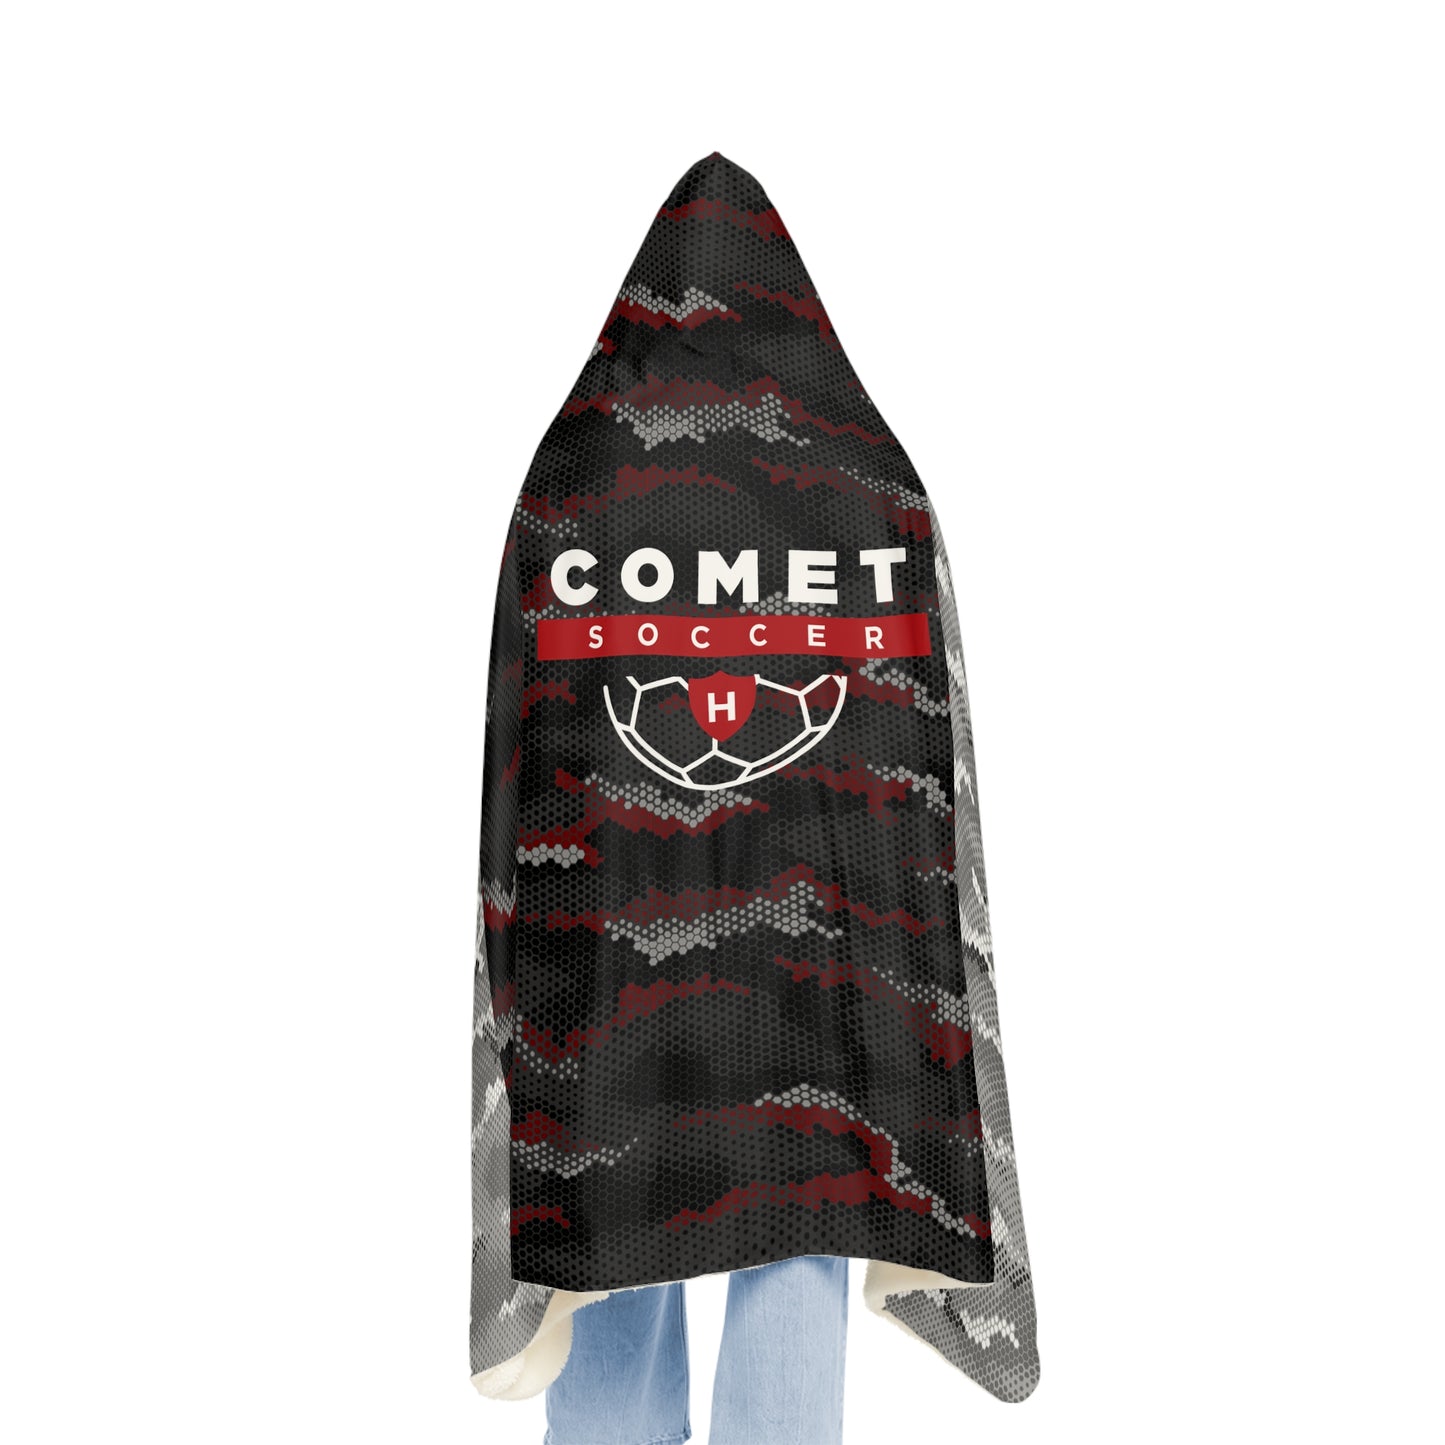 Comet Soccer - Snuggle Blanket